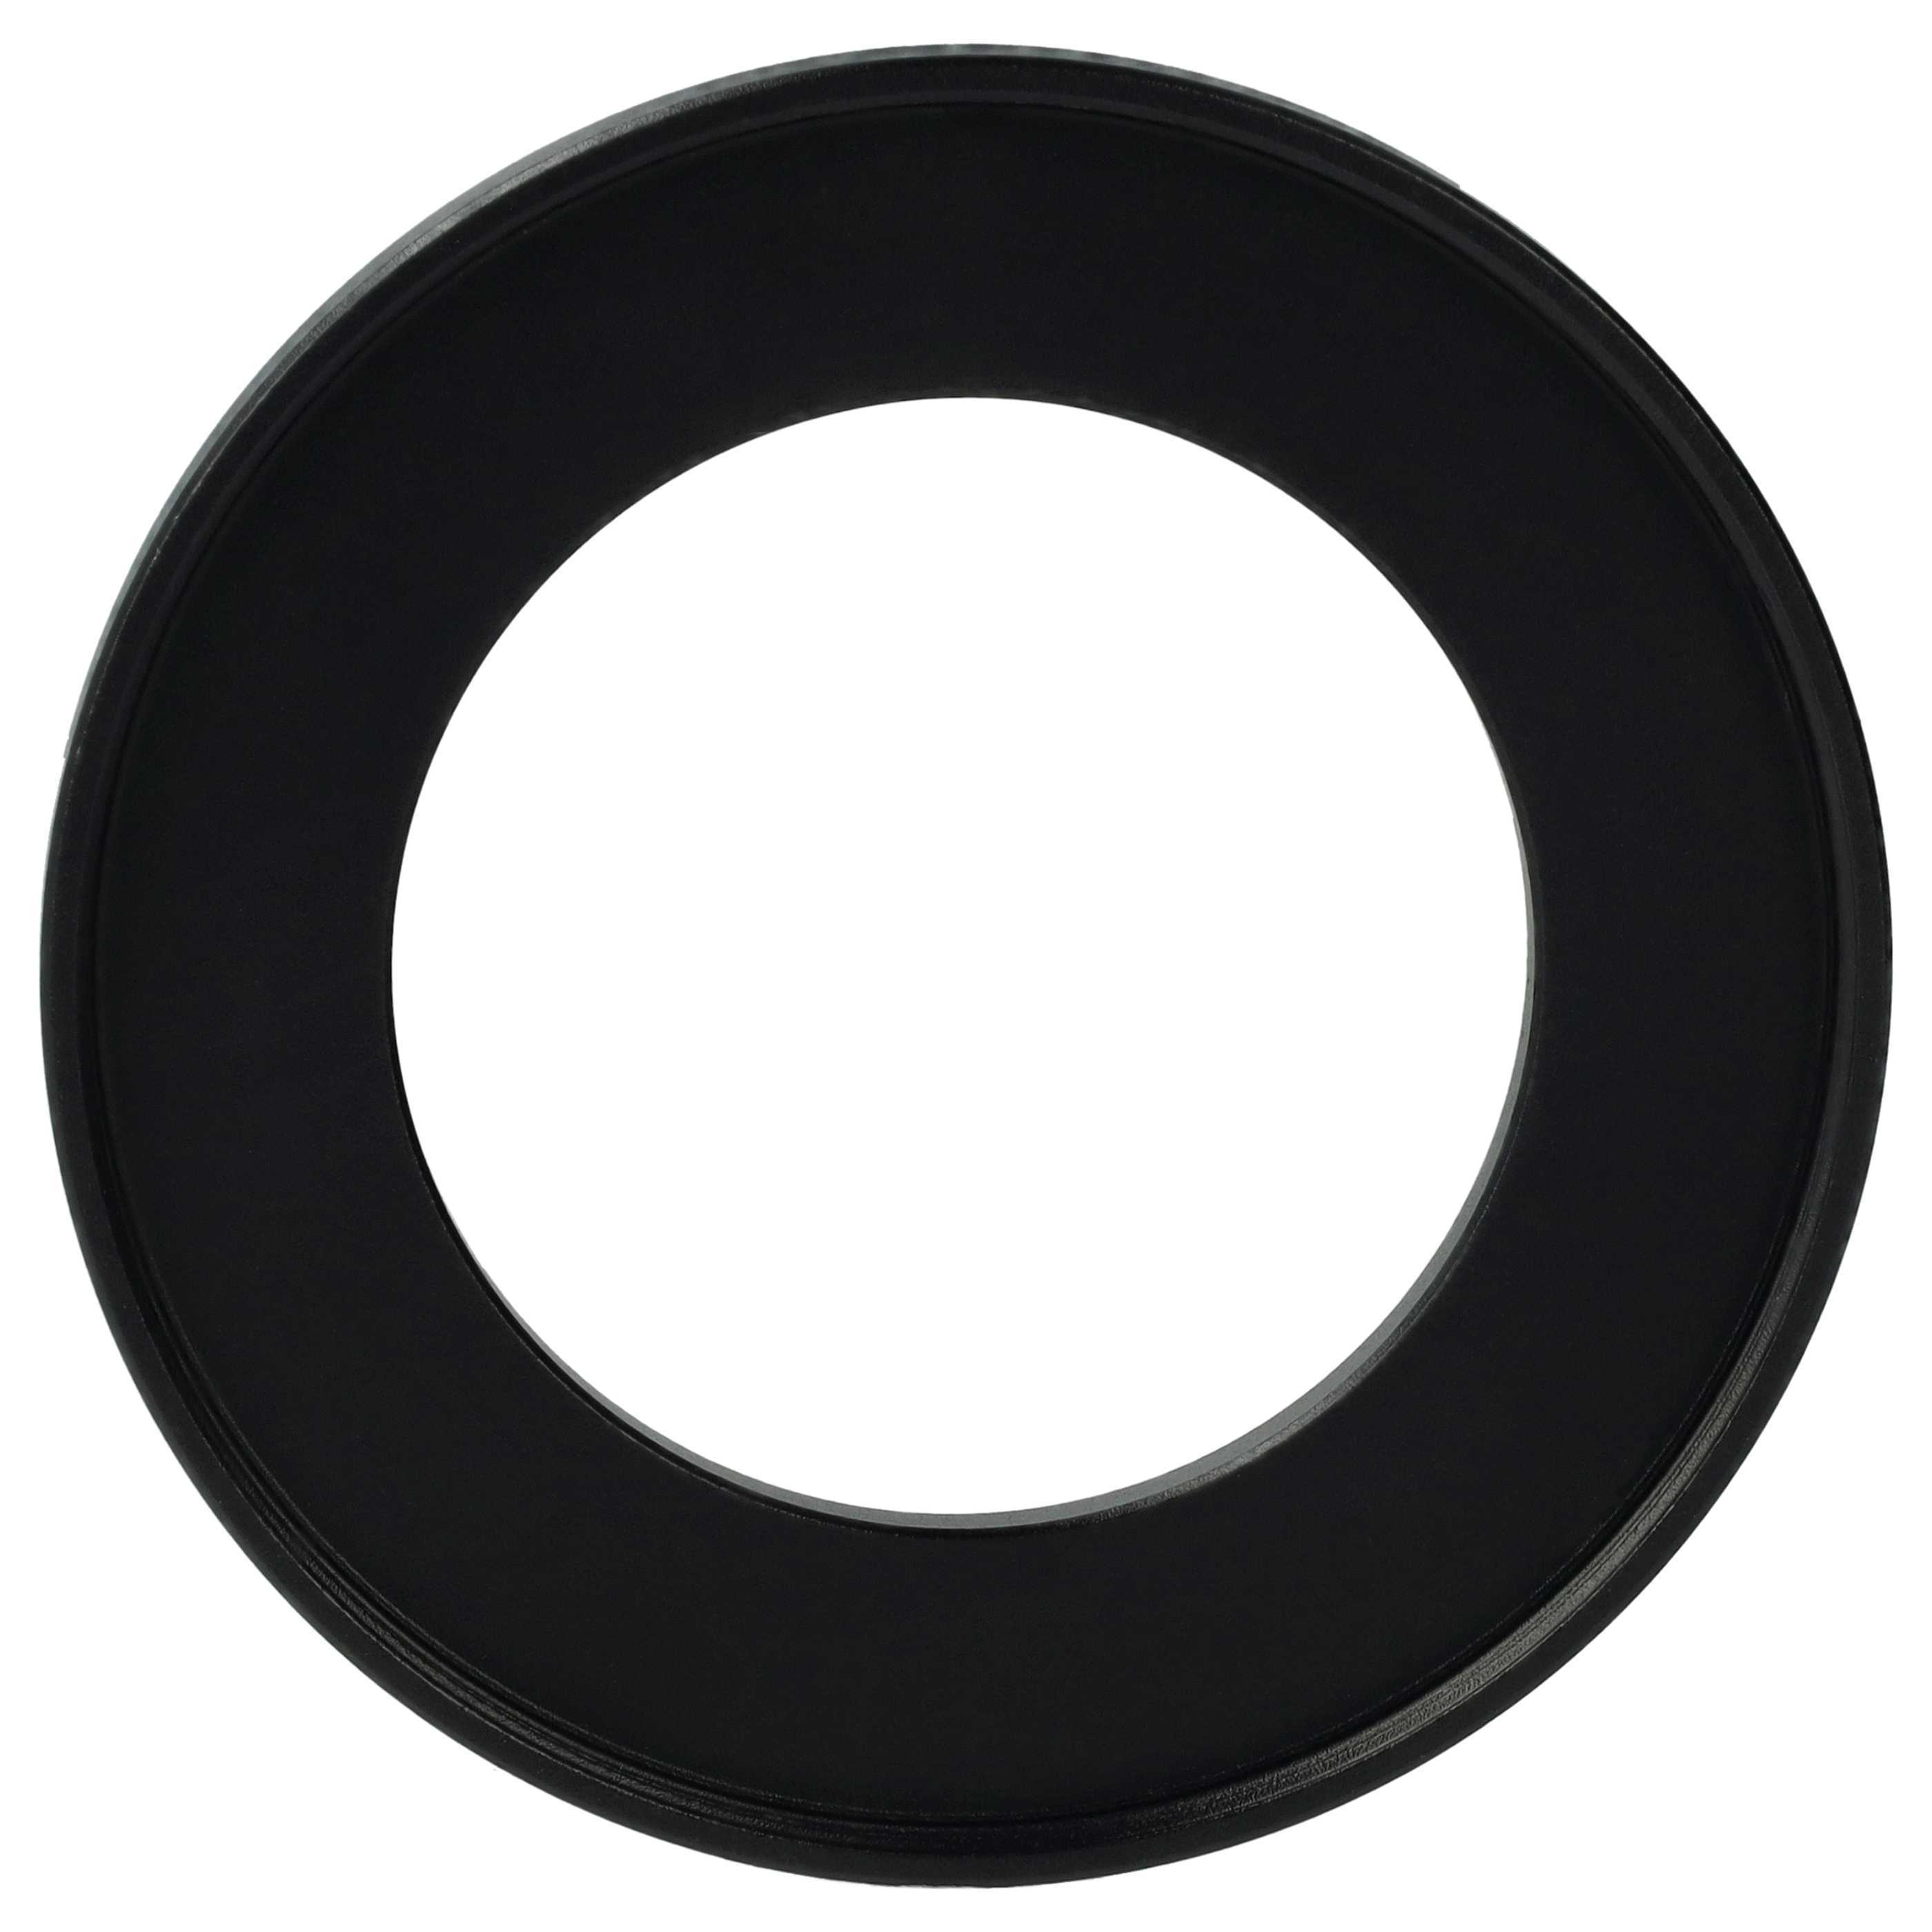 Redukcja filtrowa adapter 40,5 mm na 58 mm na różne obiektywy 